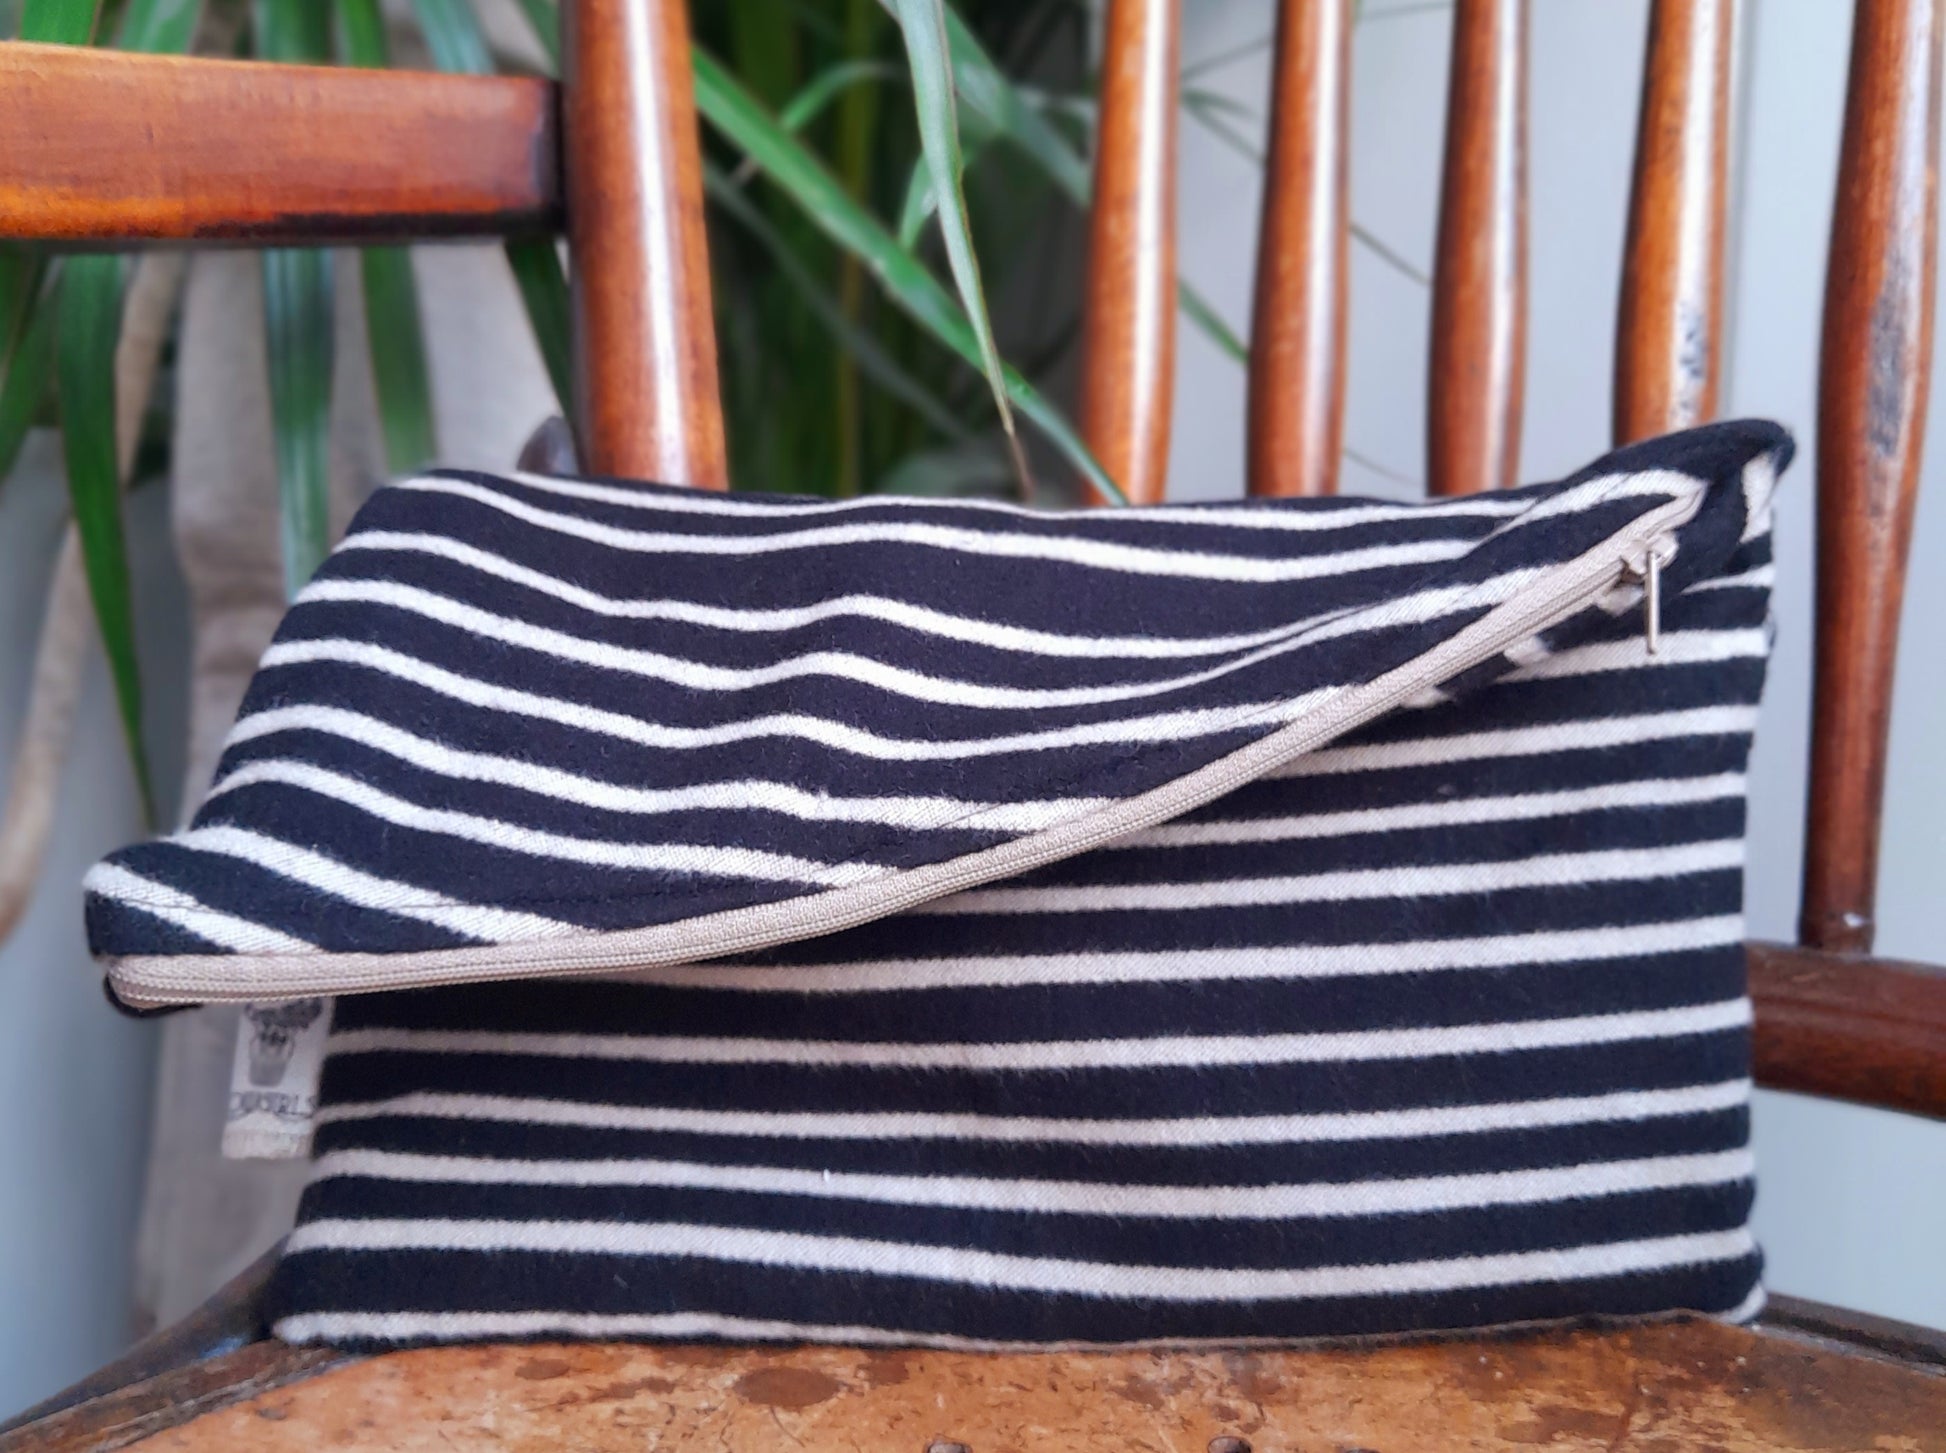 Black & white striped clutch bag by Assortia